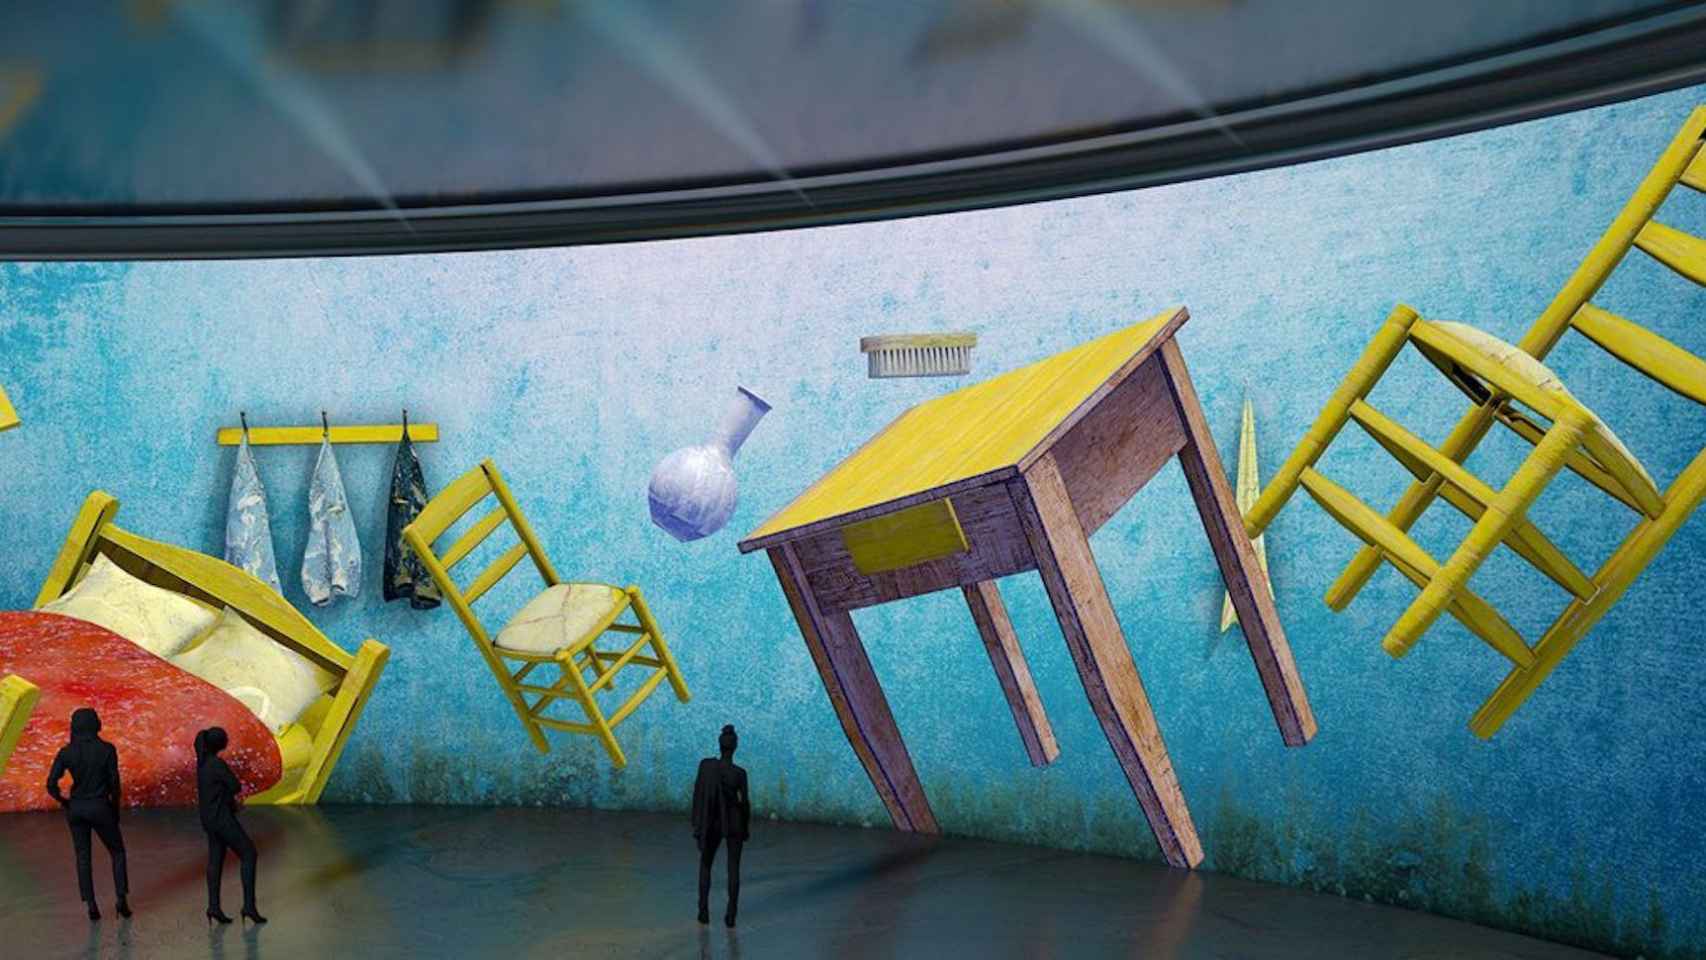 La exposición inmersiva 'El Mundo de Van Gogh' llega este noviembre a Barcelona / VAN GOGH